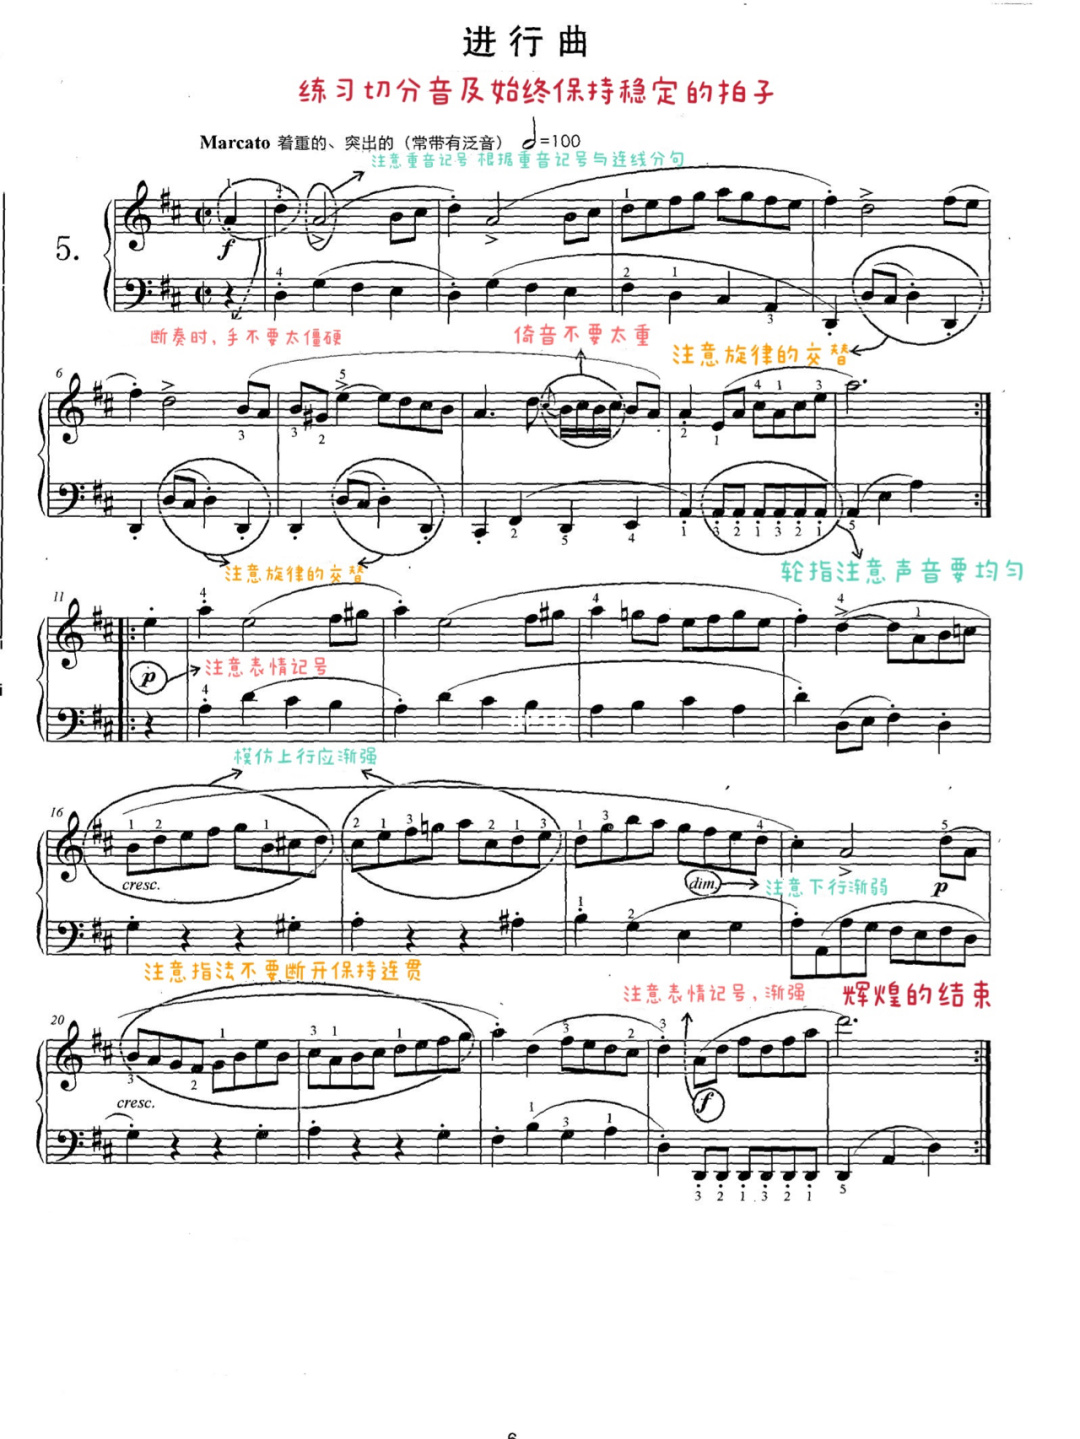 十大钢琴名曲分析(十大钢琴名曲分析图)